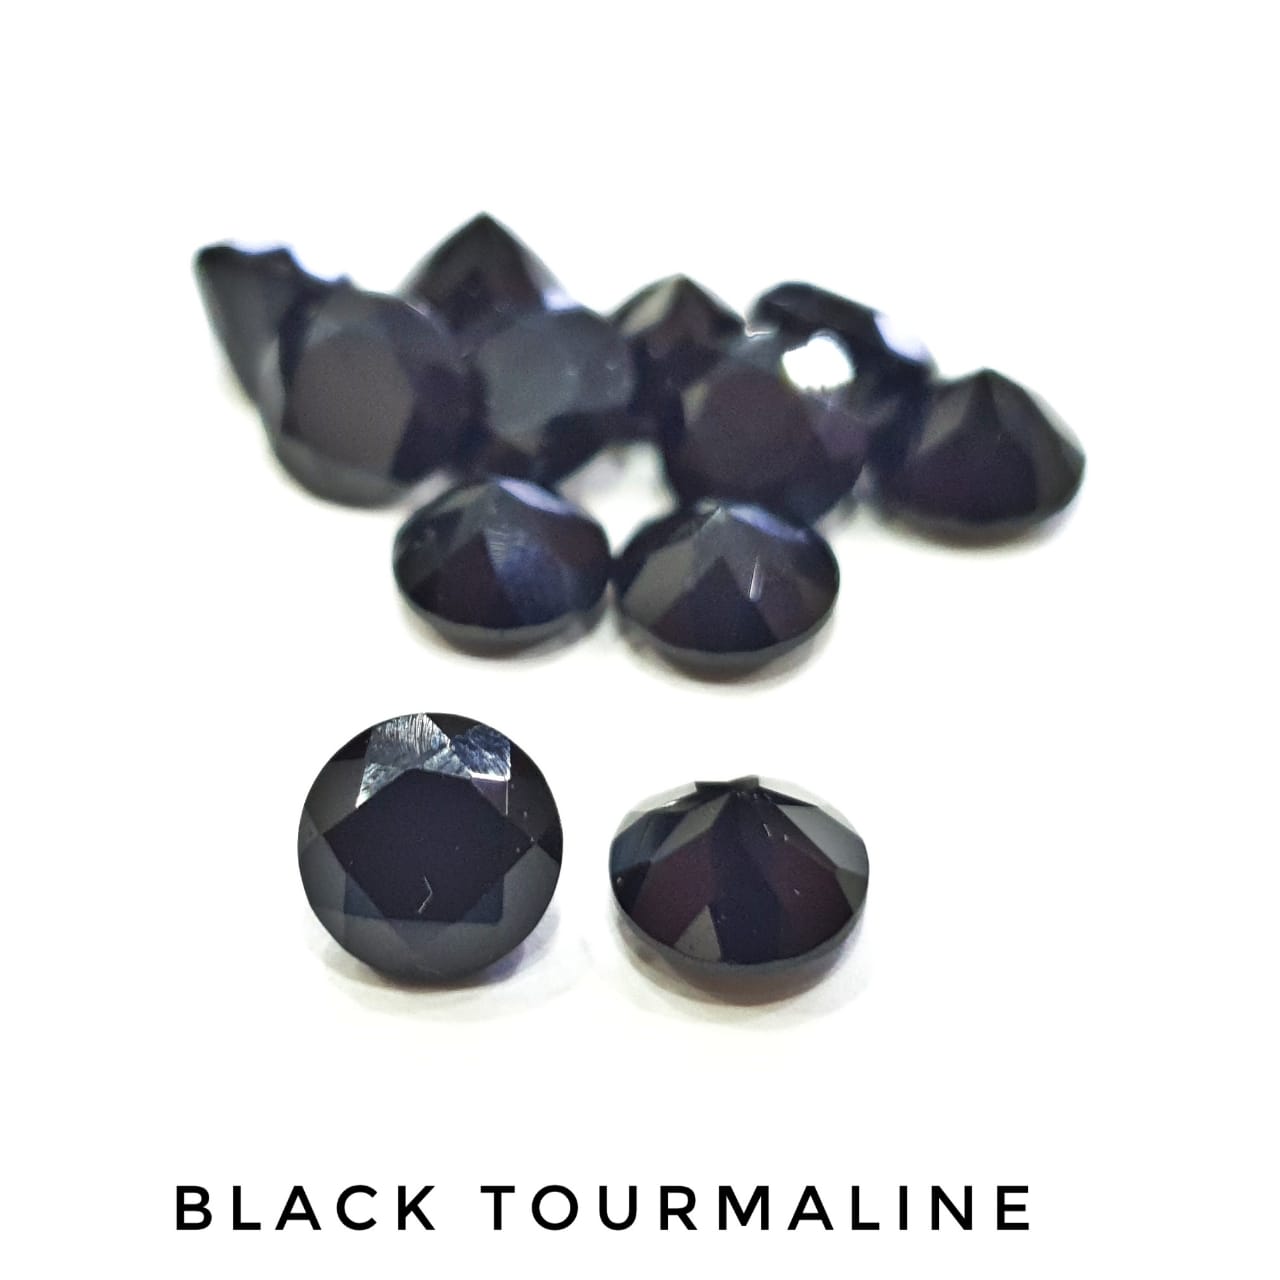 20 Pcs Black Tourmaline Gemstones | Top Quality - The LabradoriteKing